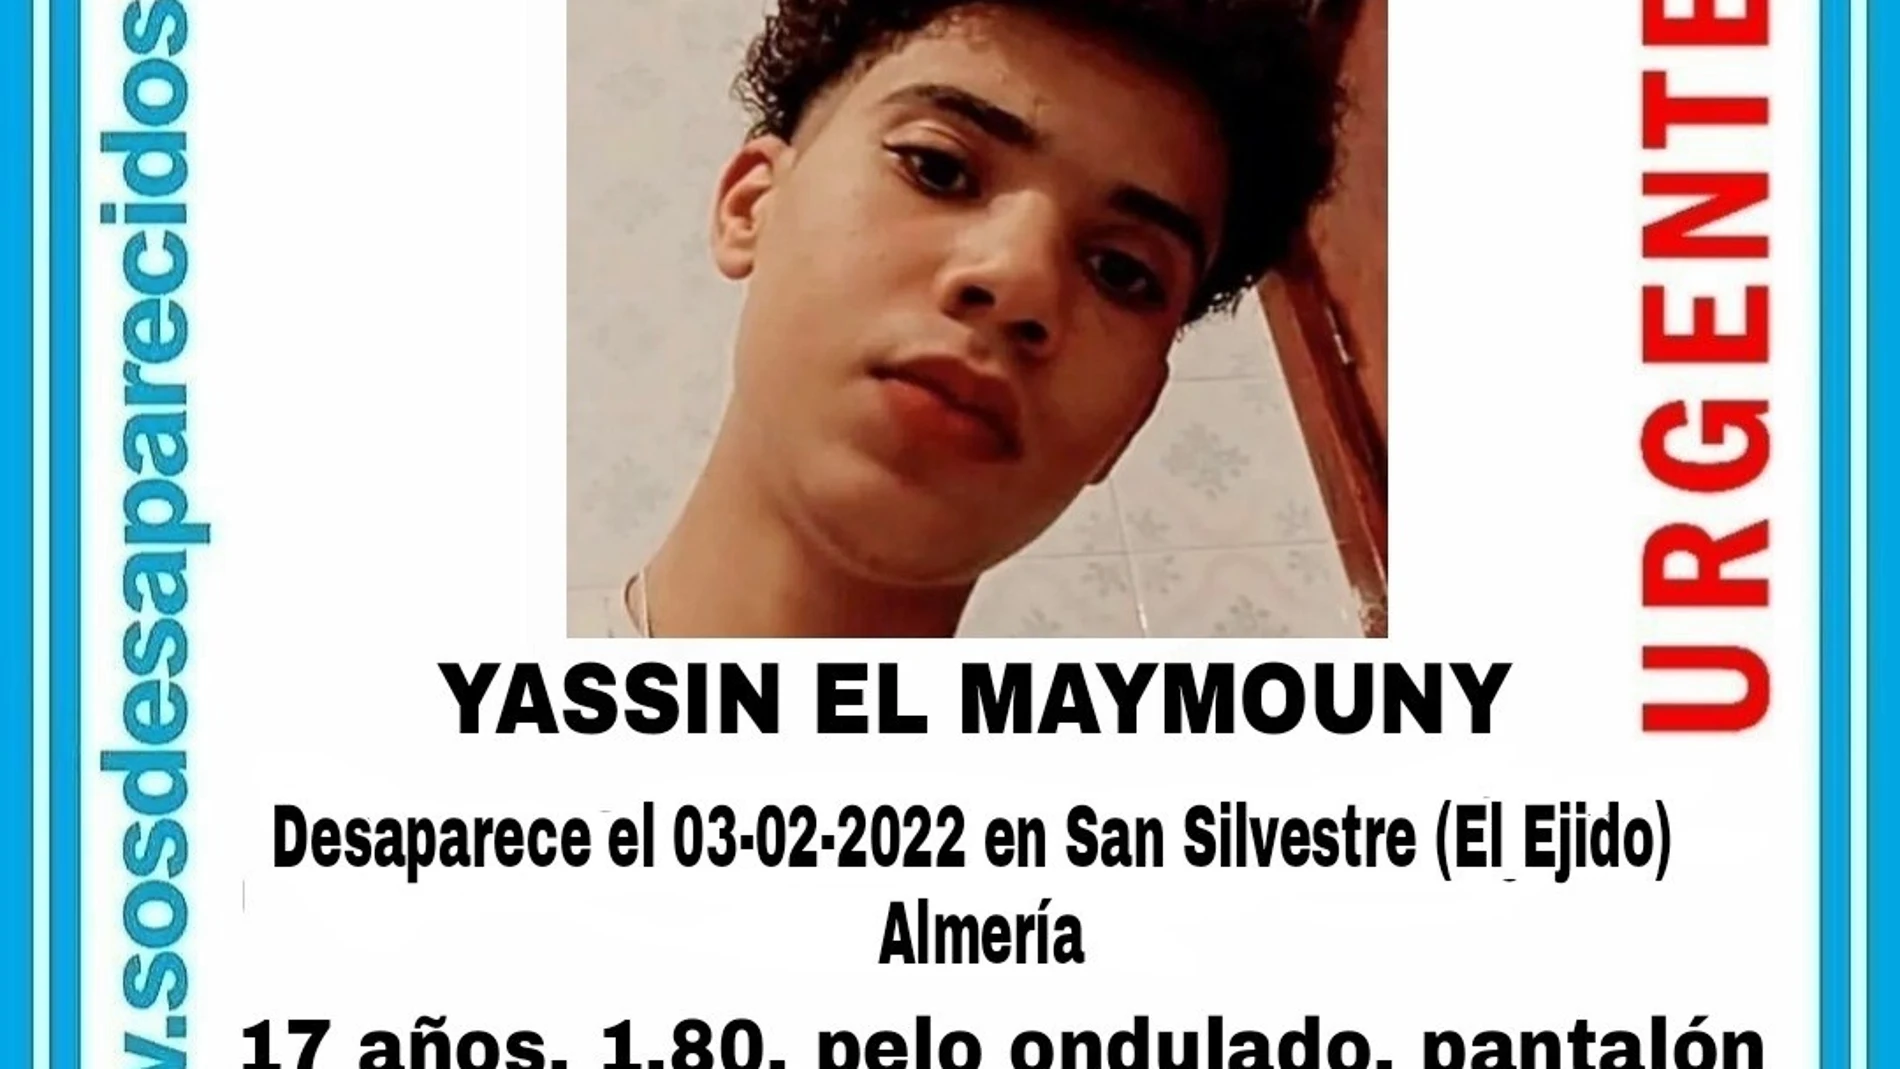 Cartel de la desaparición del menor de 17 años en El Ejido. SOS DESAPARECIDO